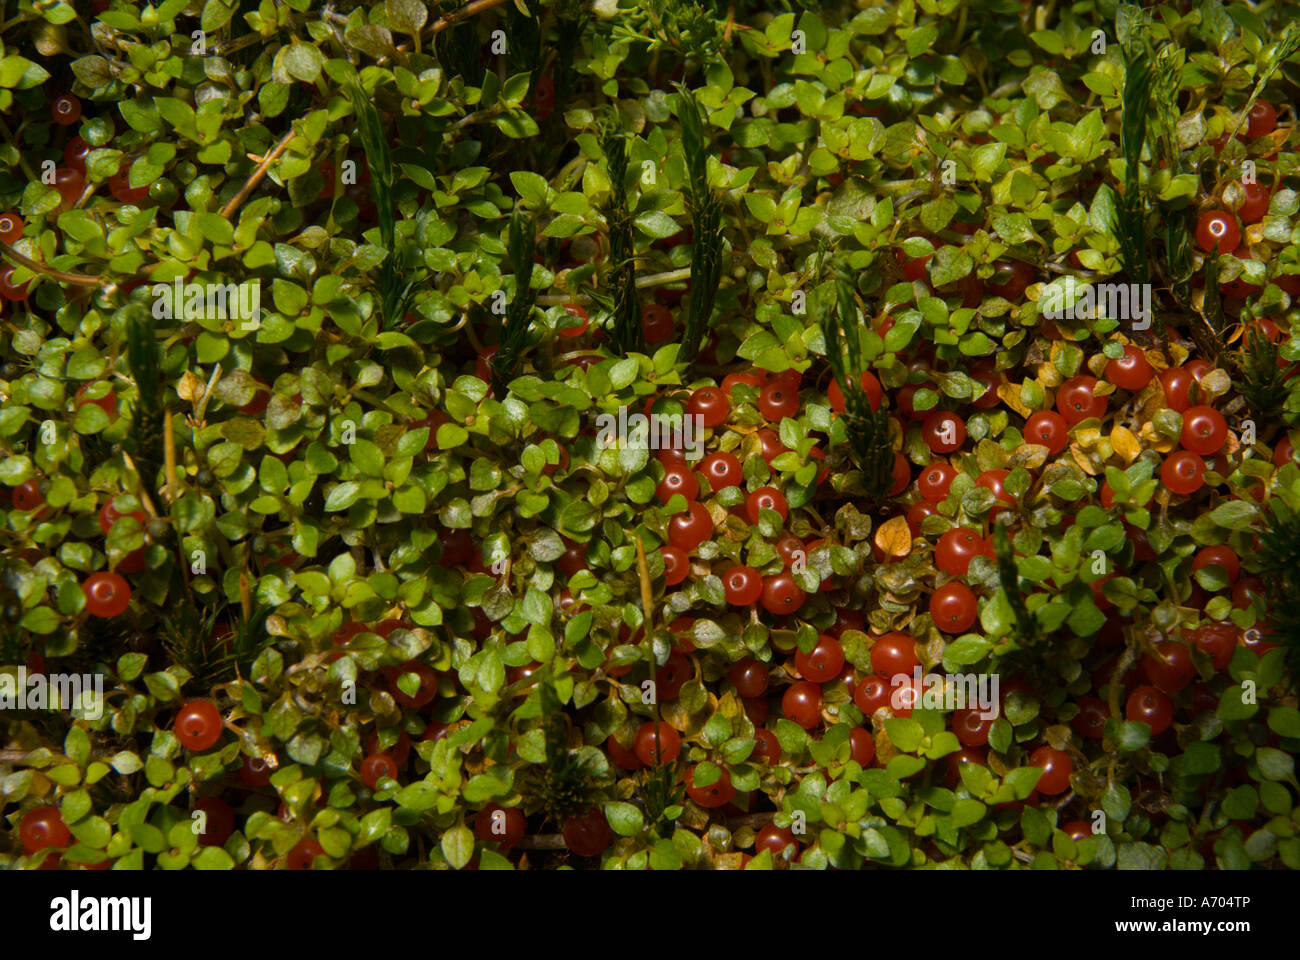 Edinburgh Botanic Gardens Scotland UK fruiting mosses and liverworts Stock Photo